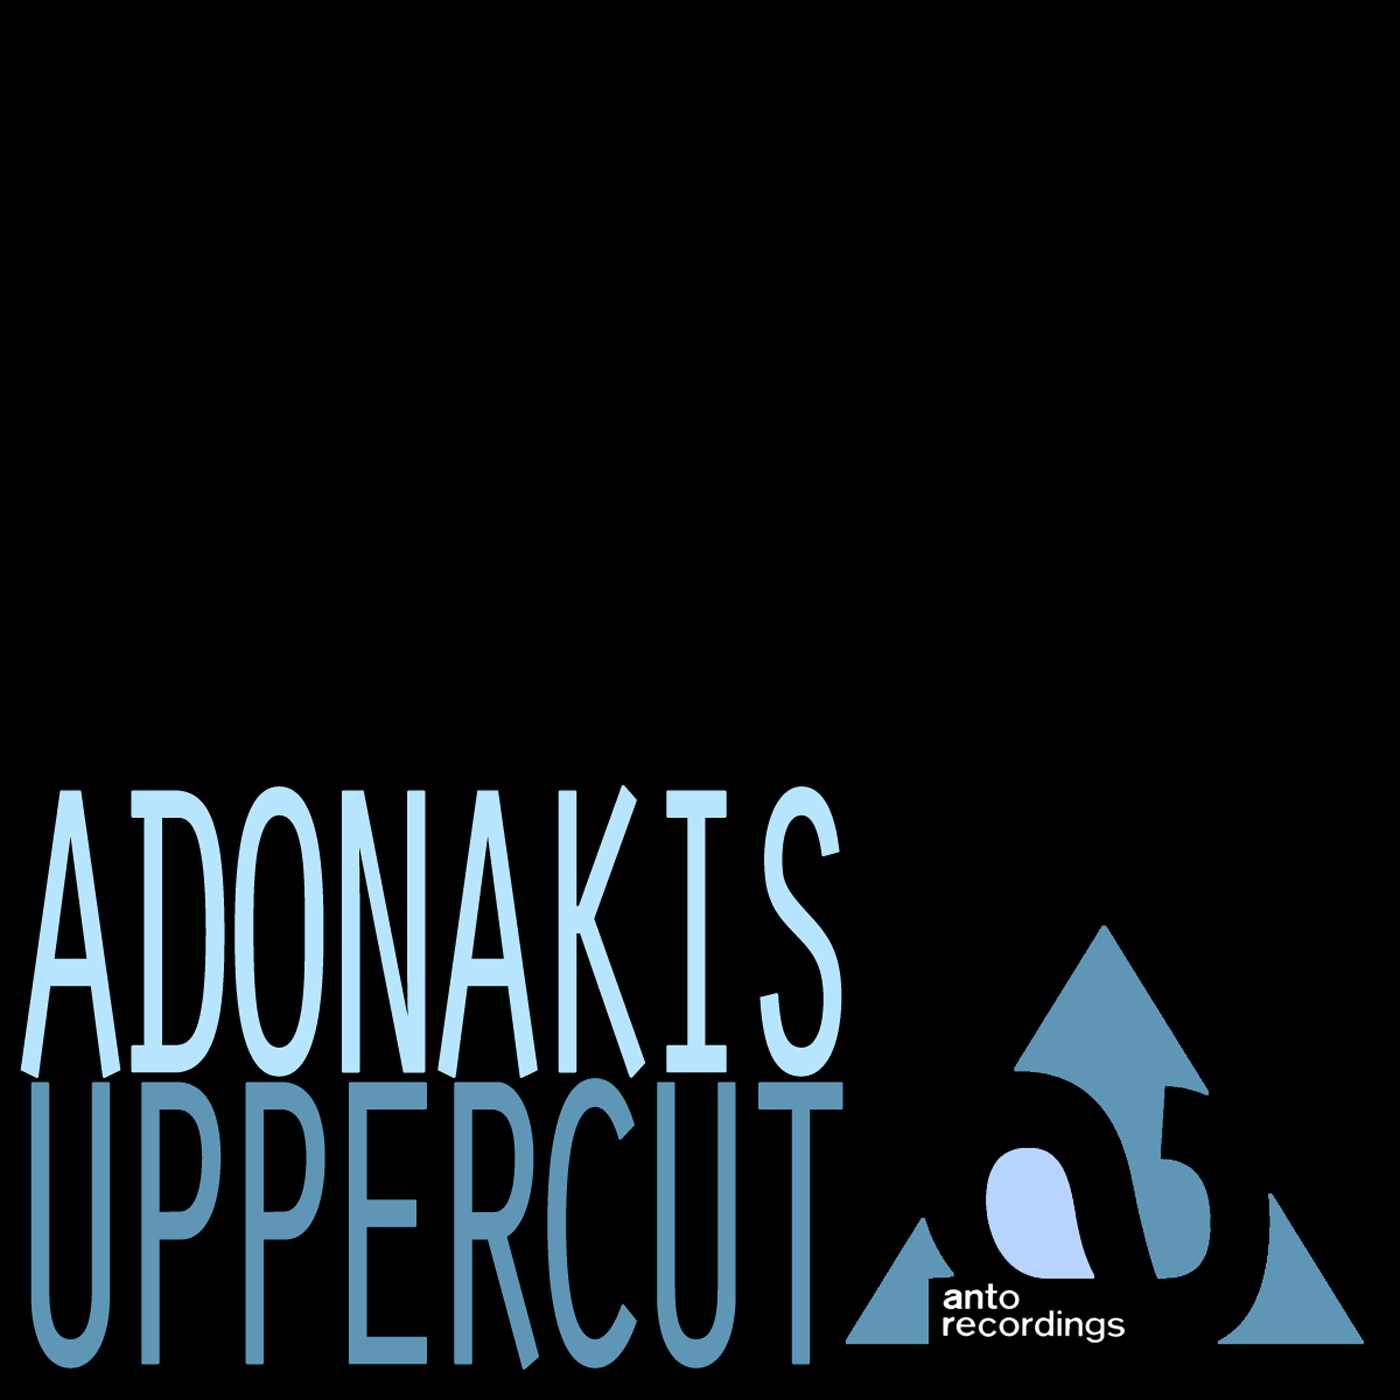 ADONAKIS  “Uppercut”